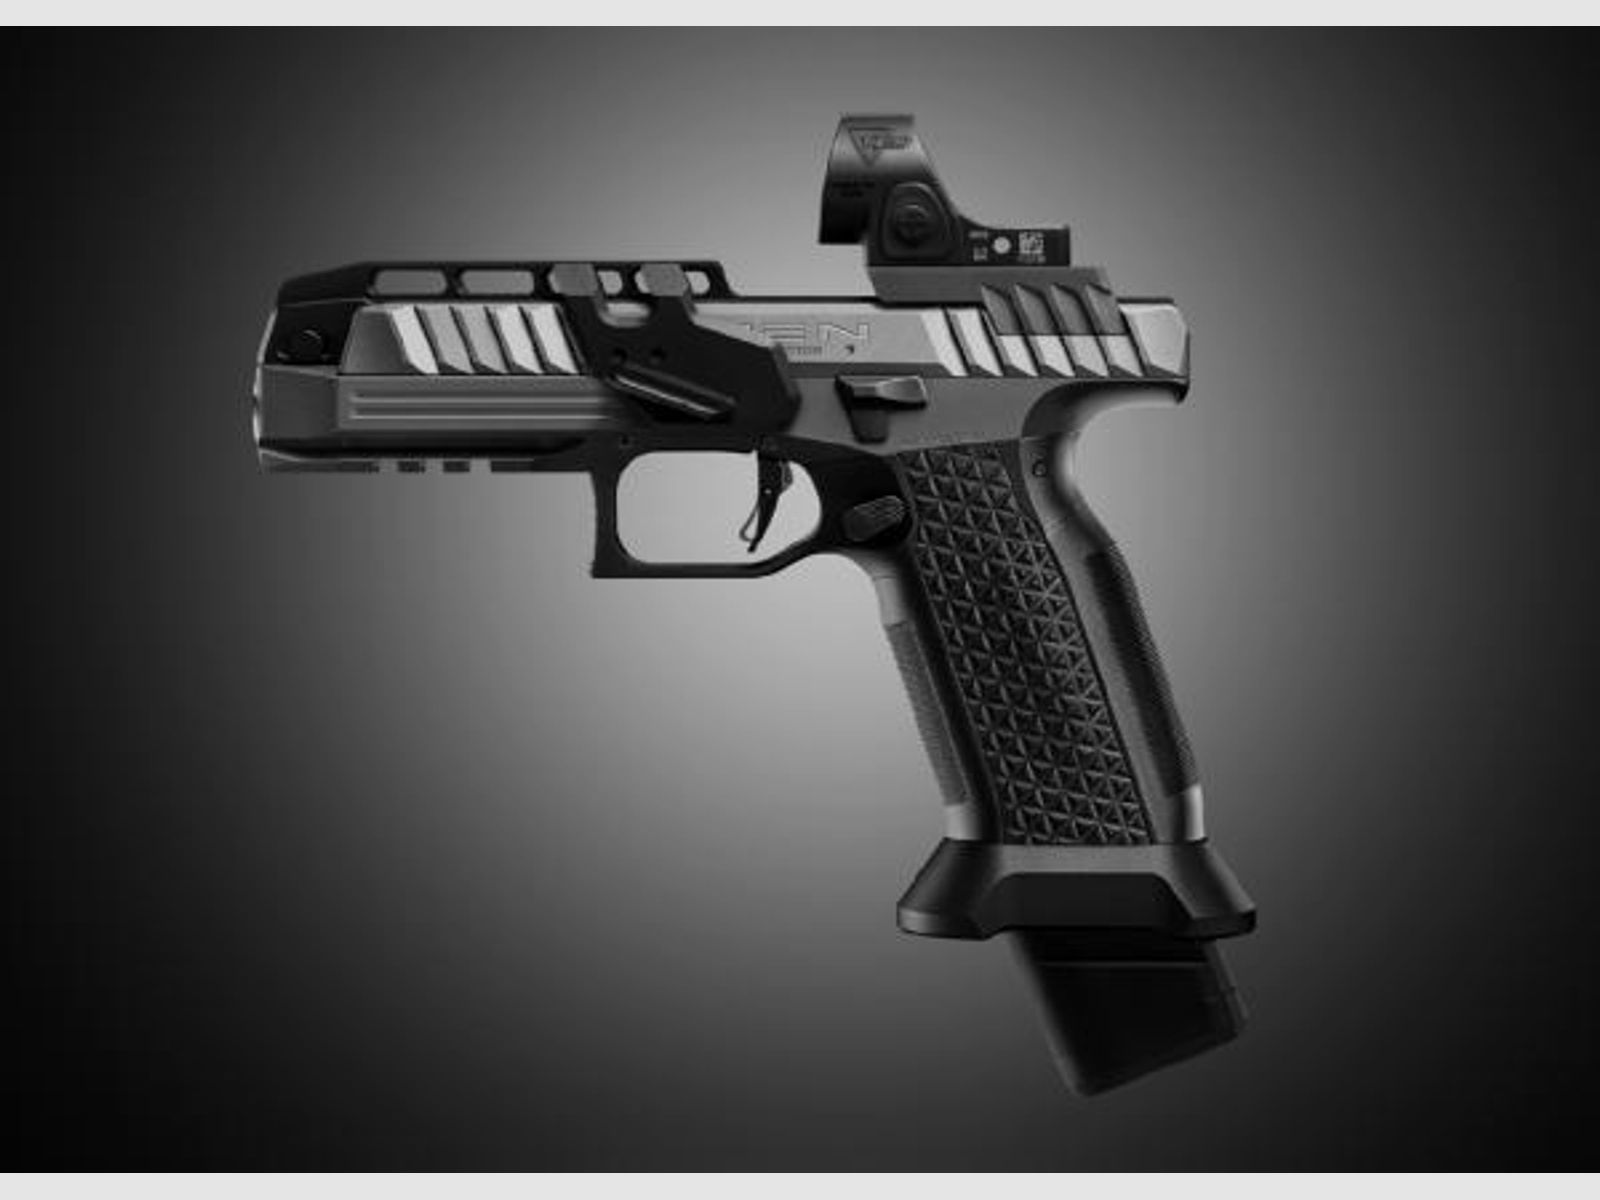 Laugo Arms Pistole Mod. ALIEN Creator Ltd. OpticS 9mmLuger  Grey/Black